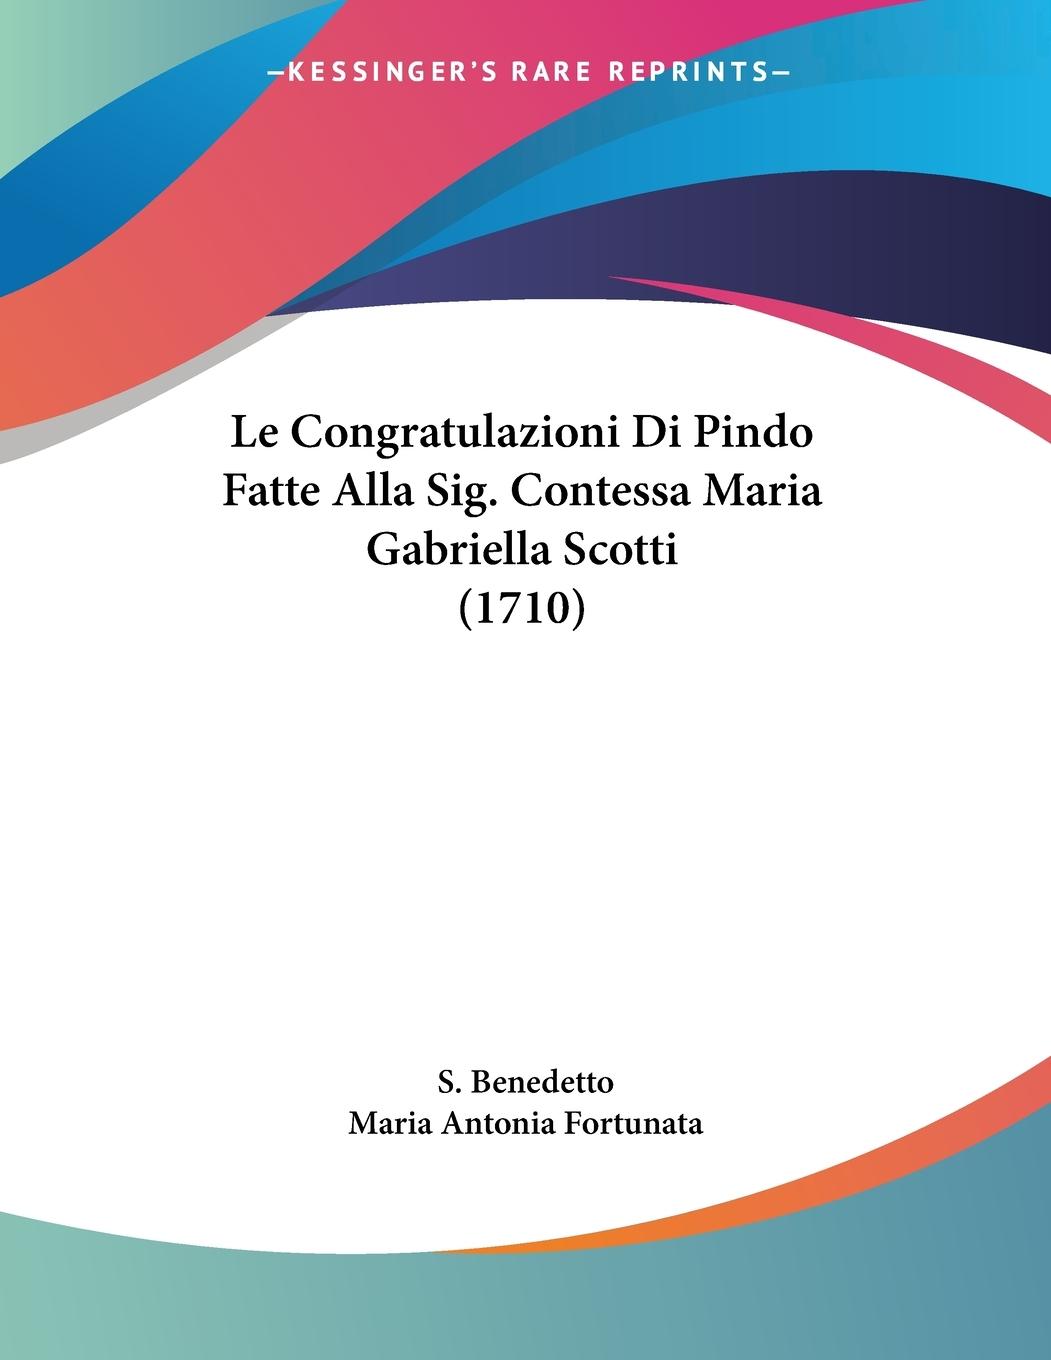 Le Congratulazioni Di Pindo Fatte Alla Sig. Contessa Maria Gabriella Scotti (1710) - Benedetto, S. Fortunata, Maria Antonia